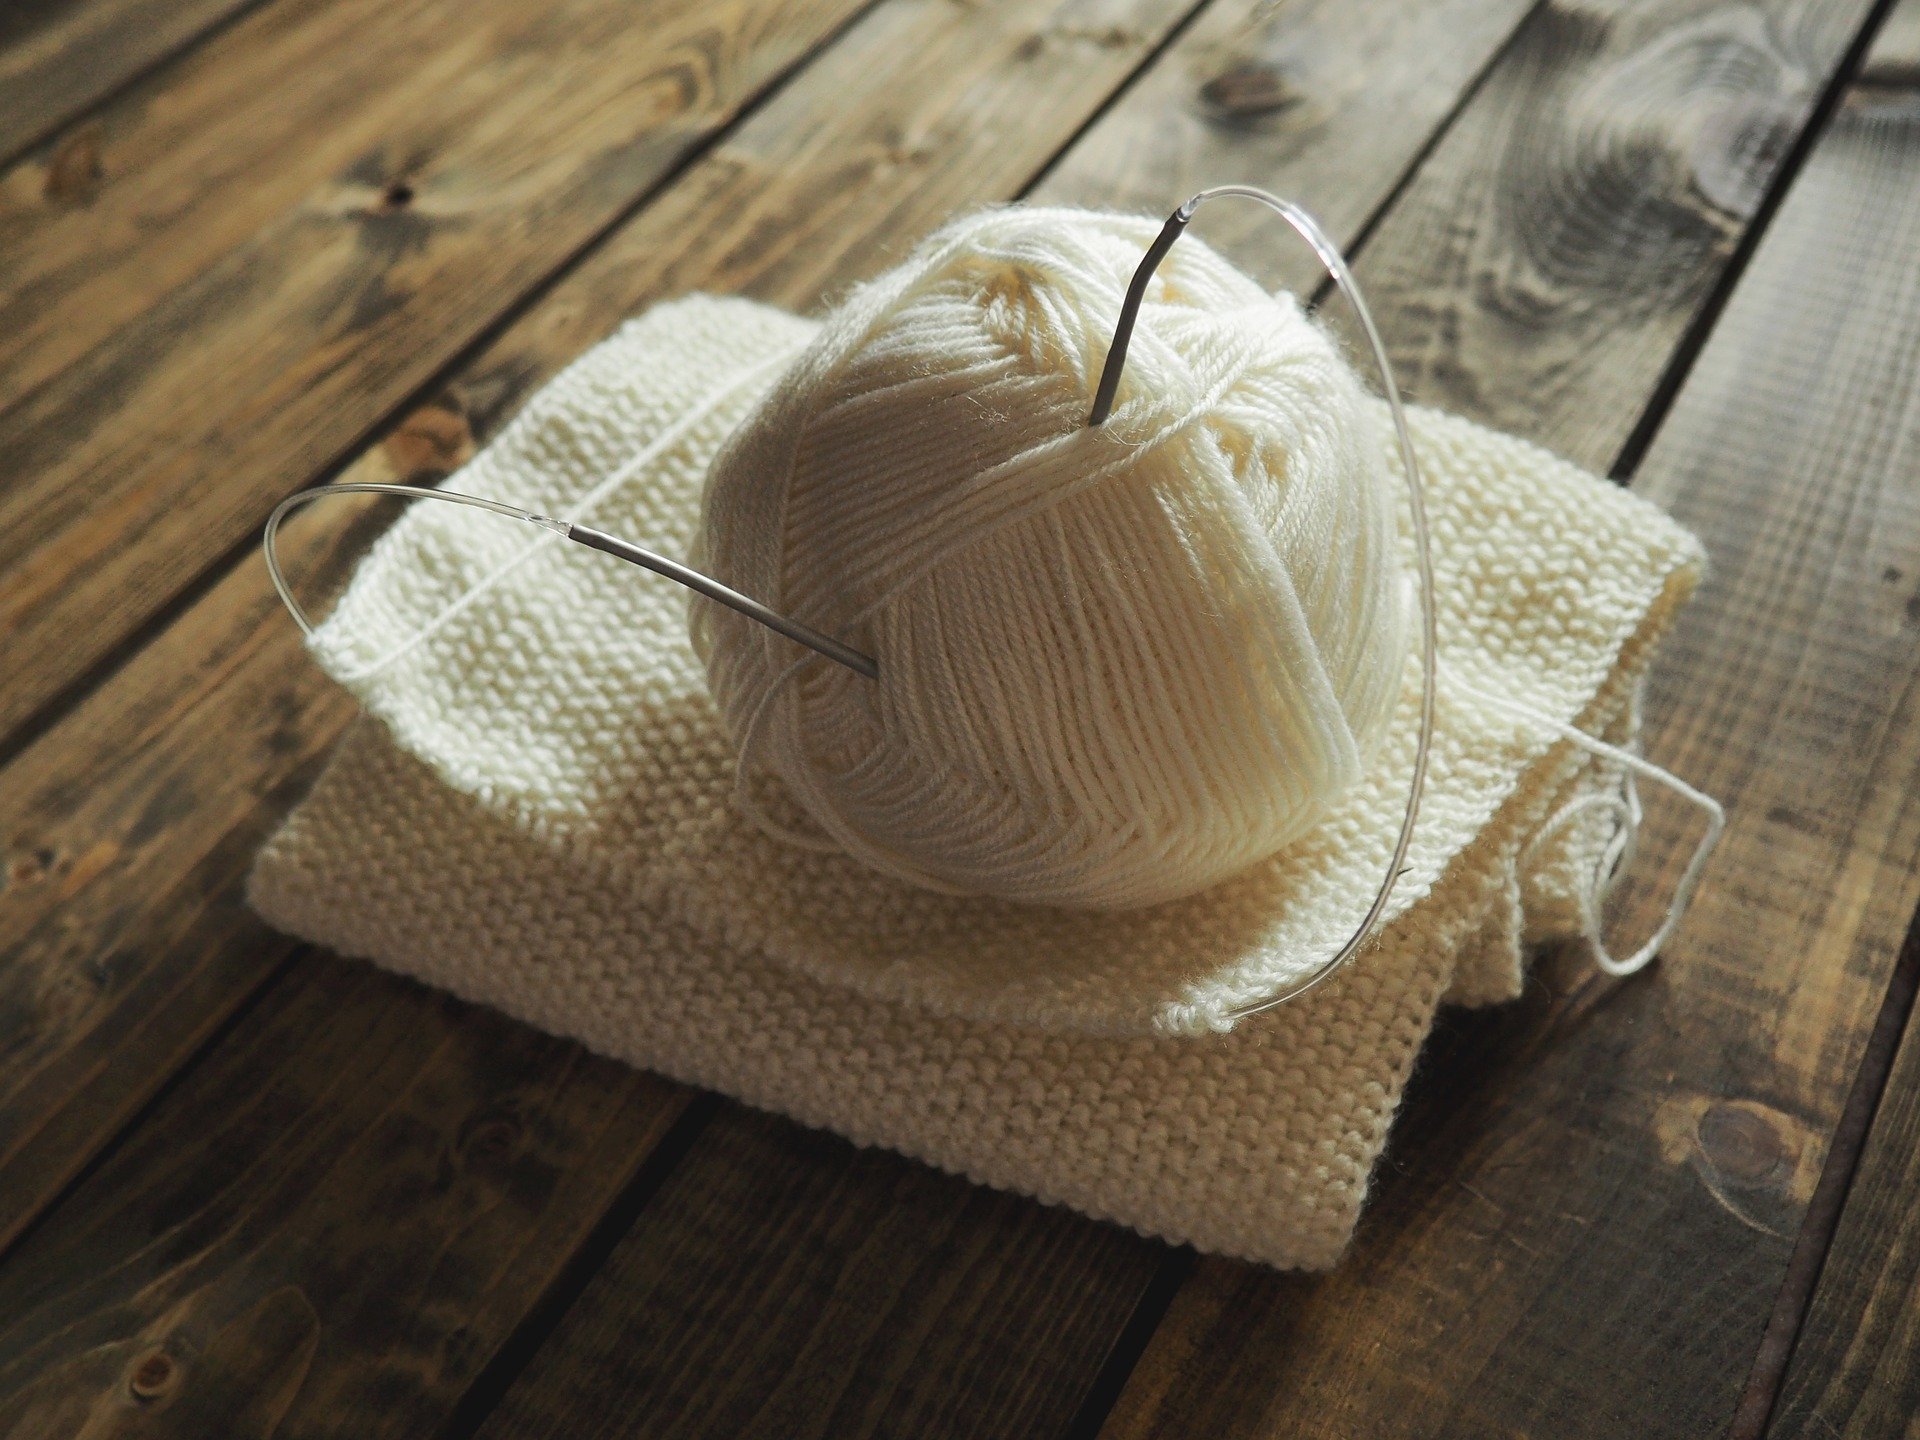 knitting-1268932_1920.jpg